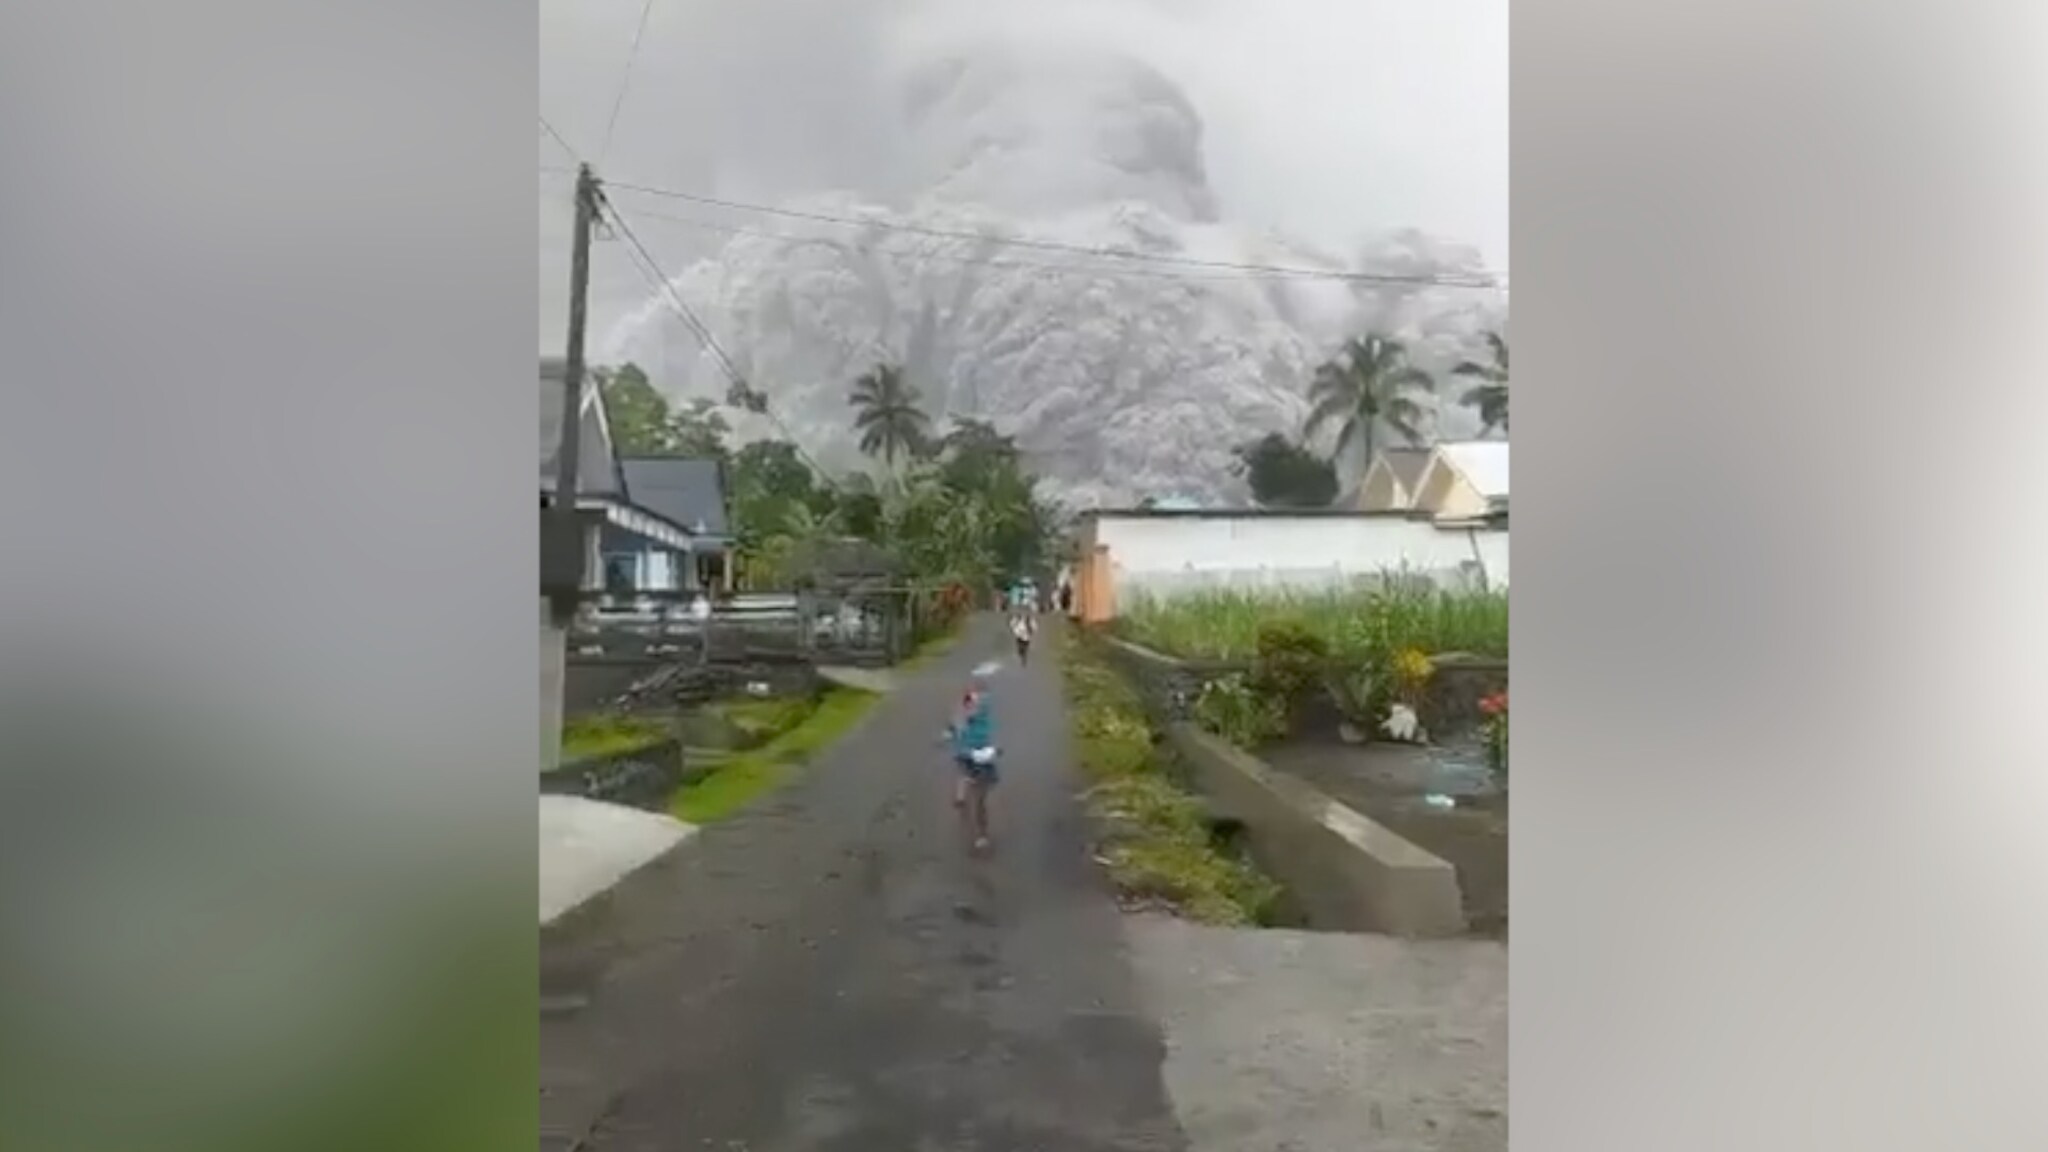 Vulkanutbrudd i Indonesia: Flere døde og landsbyer dekket i aske - VG